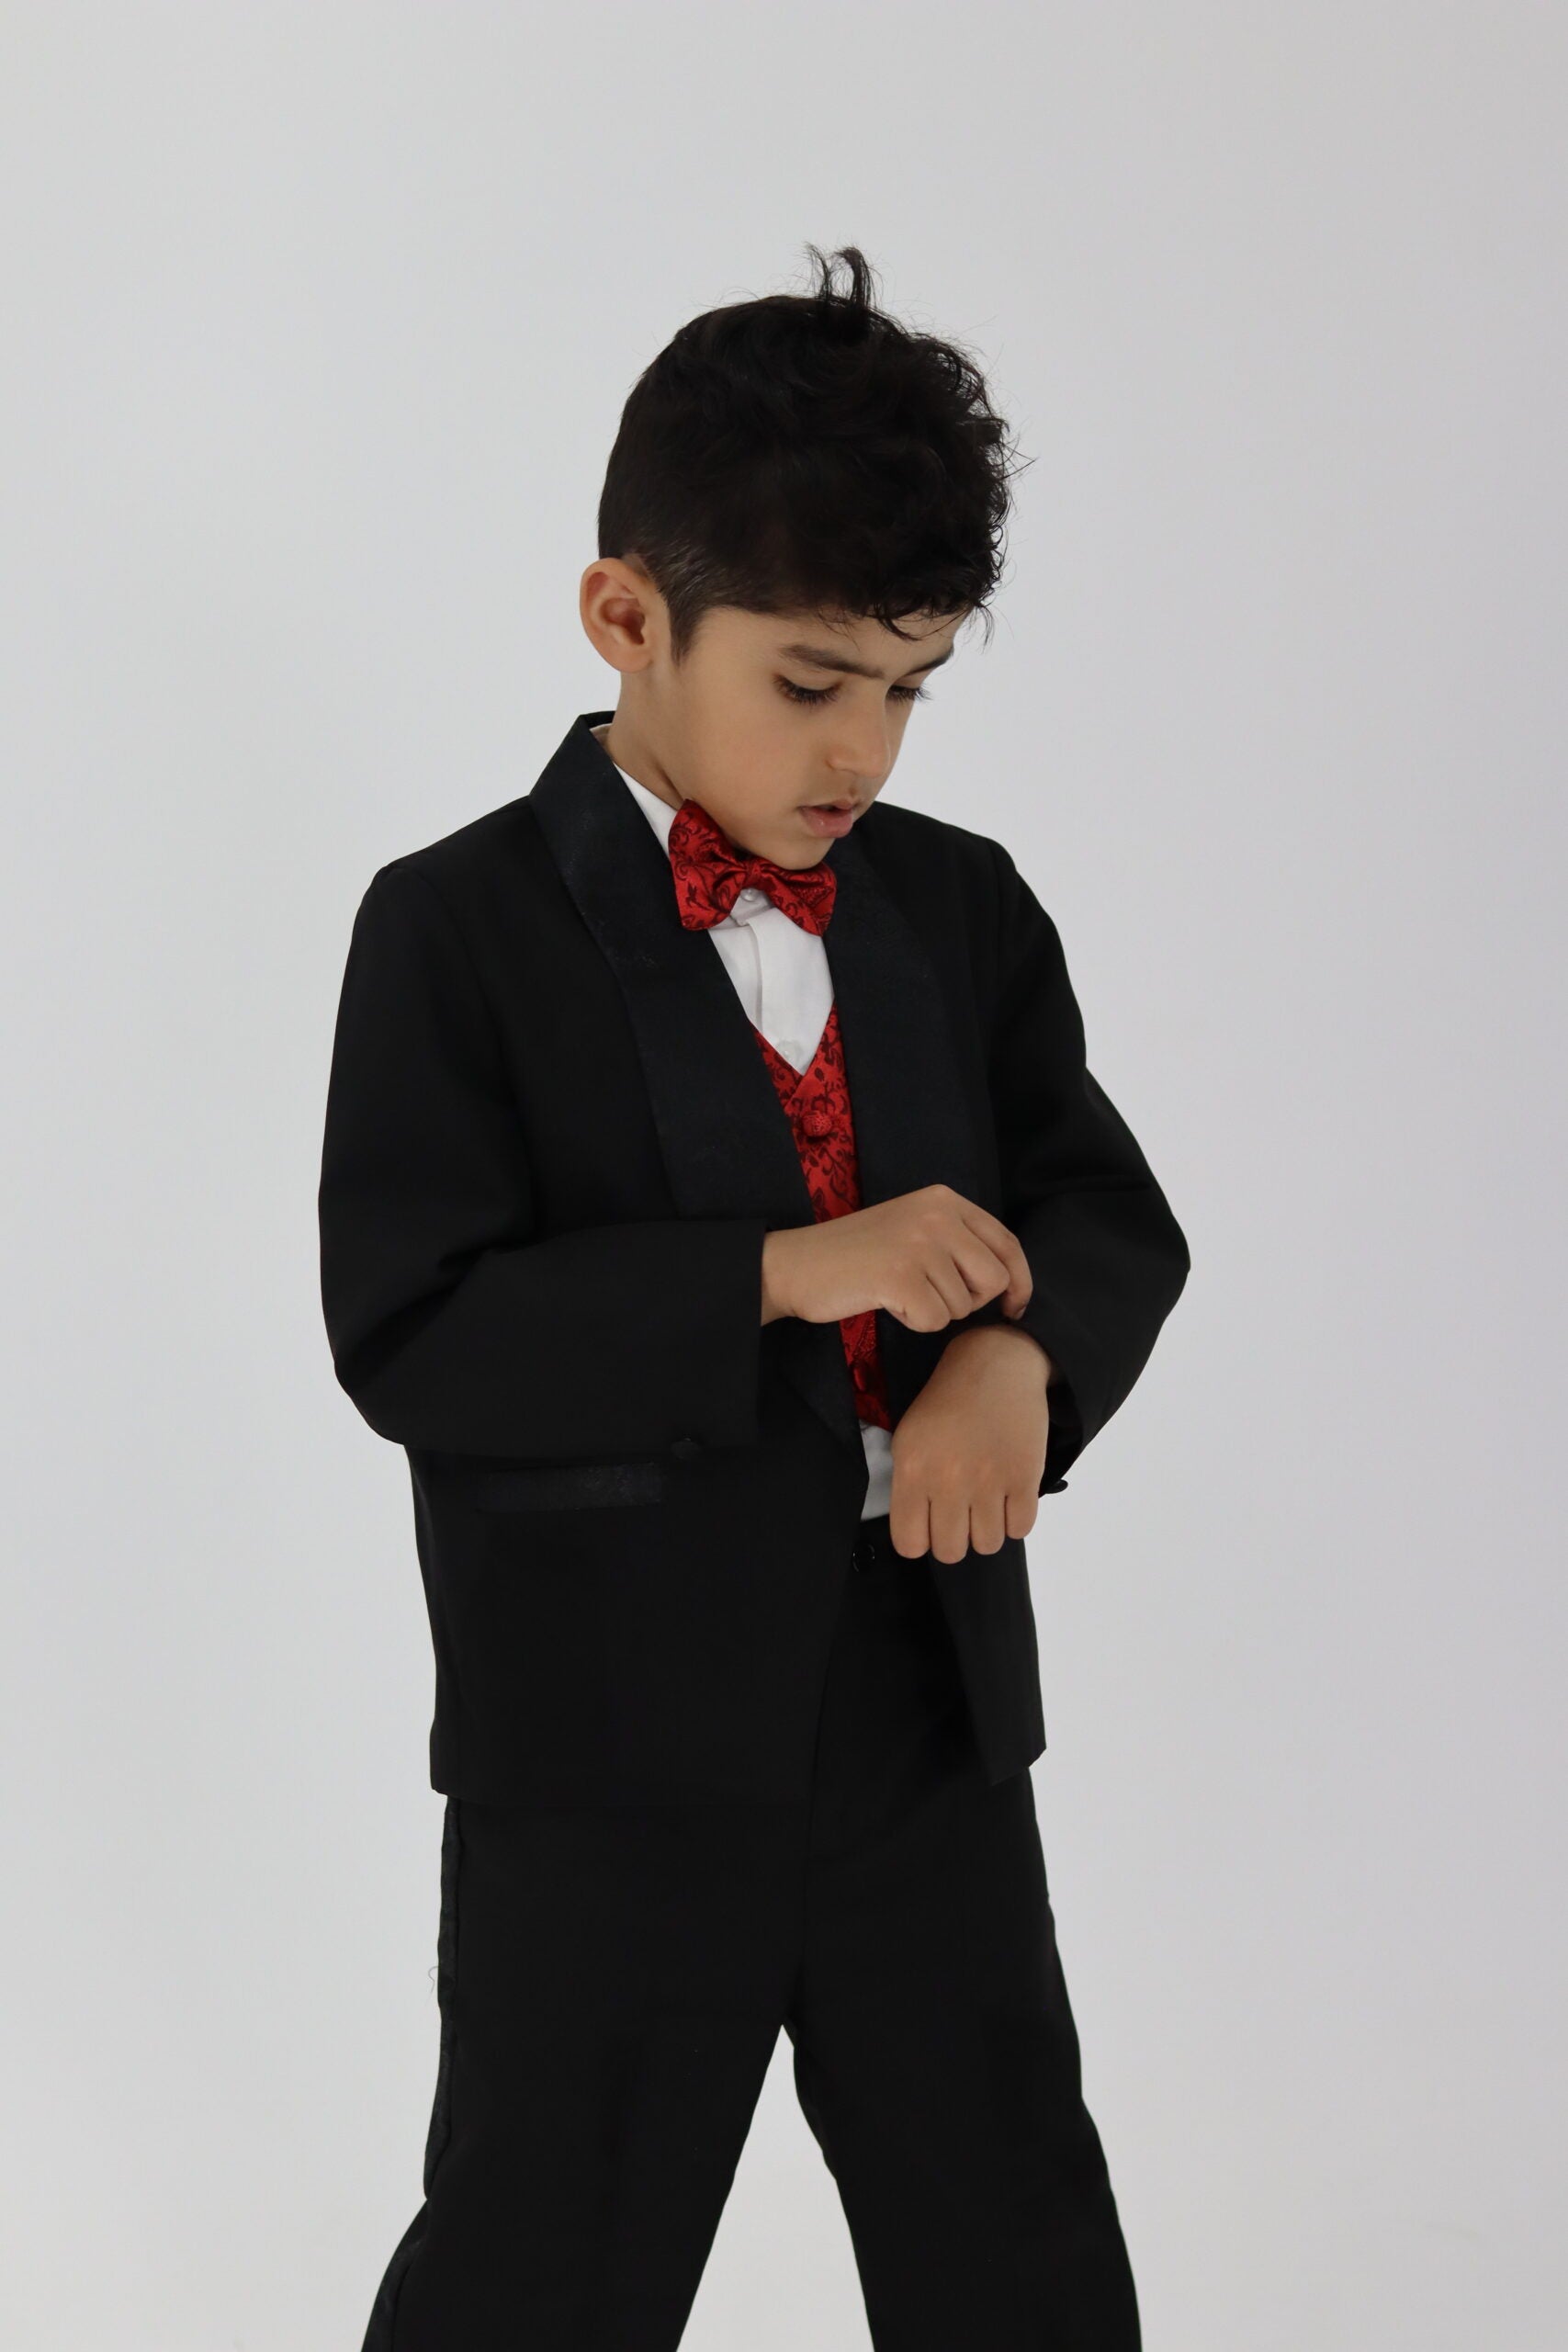 Boy Tuxedo Black Suit 5pc Set